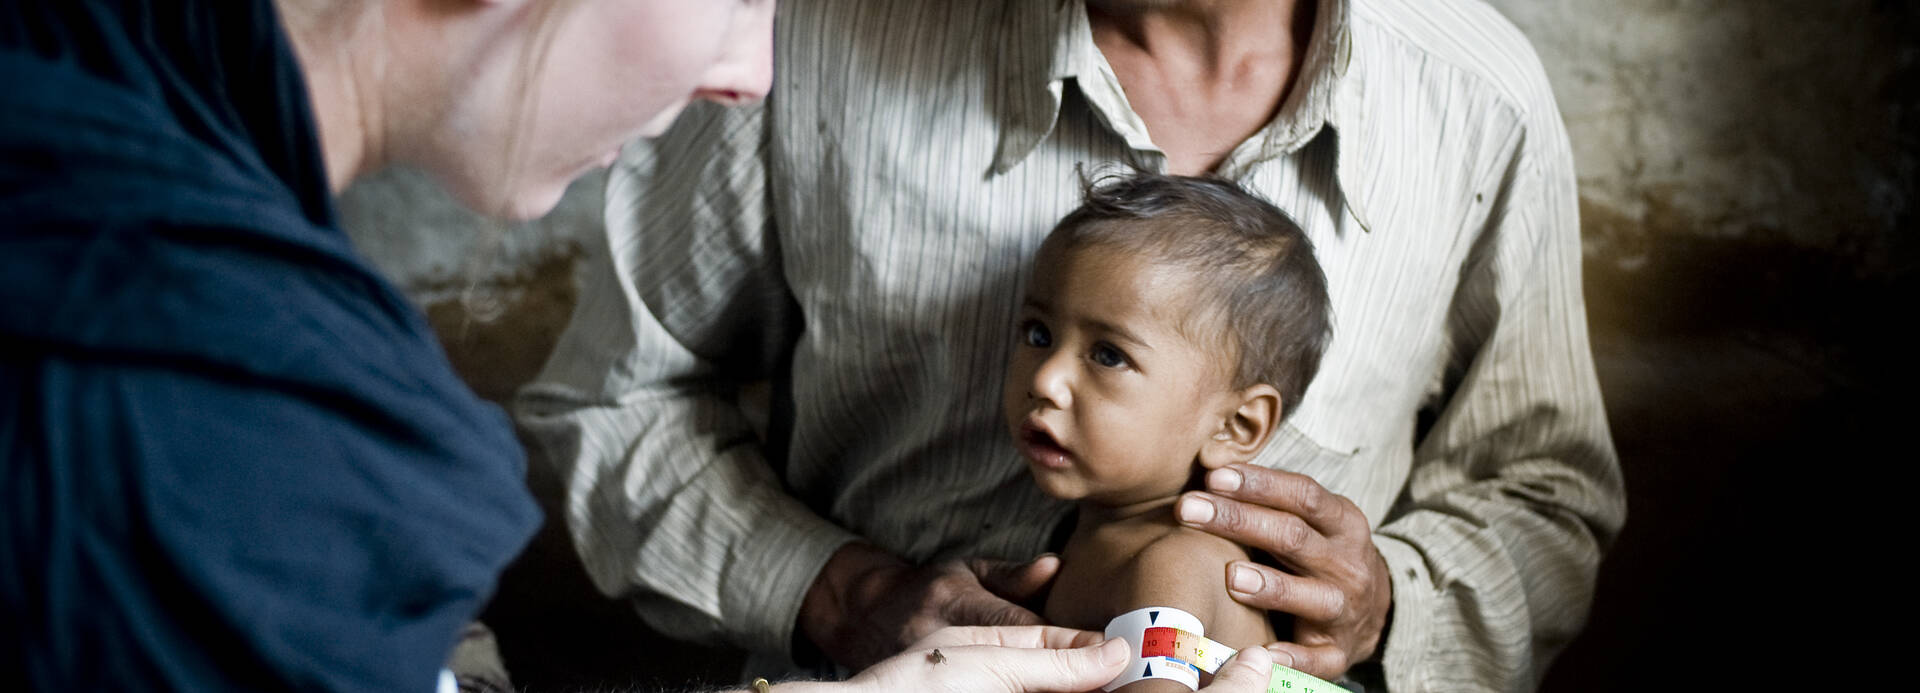 Kleines Kind bei der Messung seines Armumfangs mithilfe des MUAC-Bands. Diagnose: schwere Mangelernährung